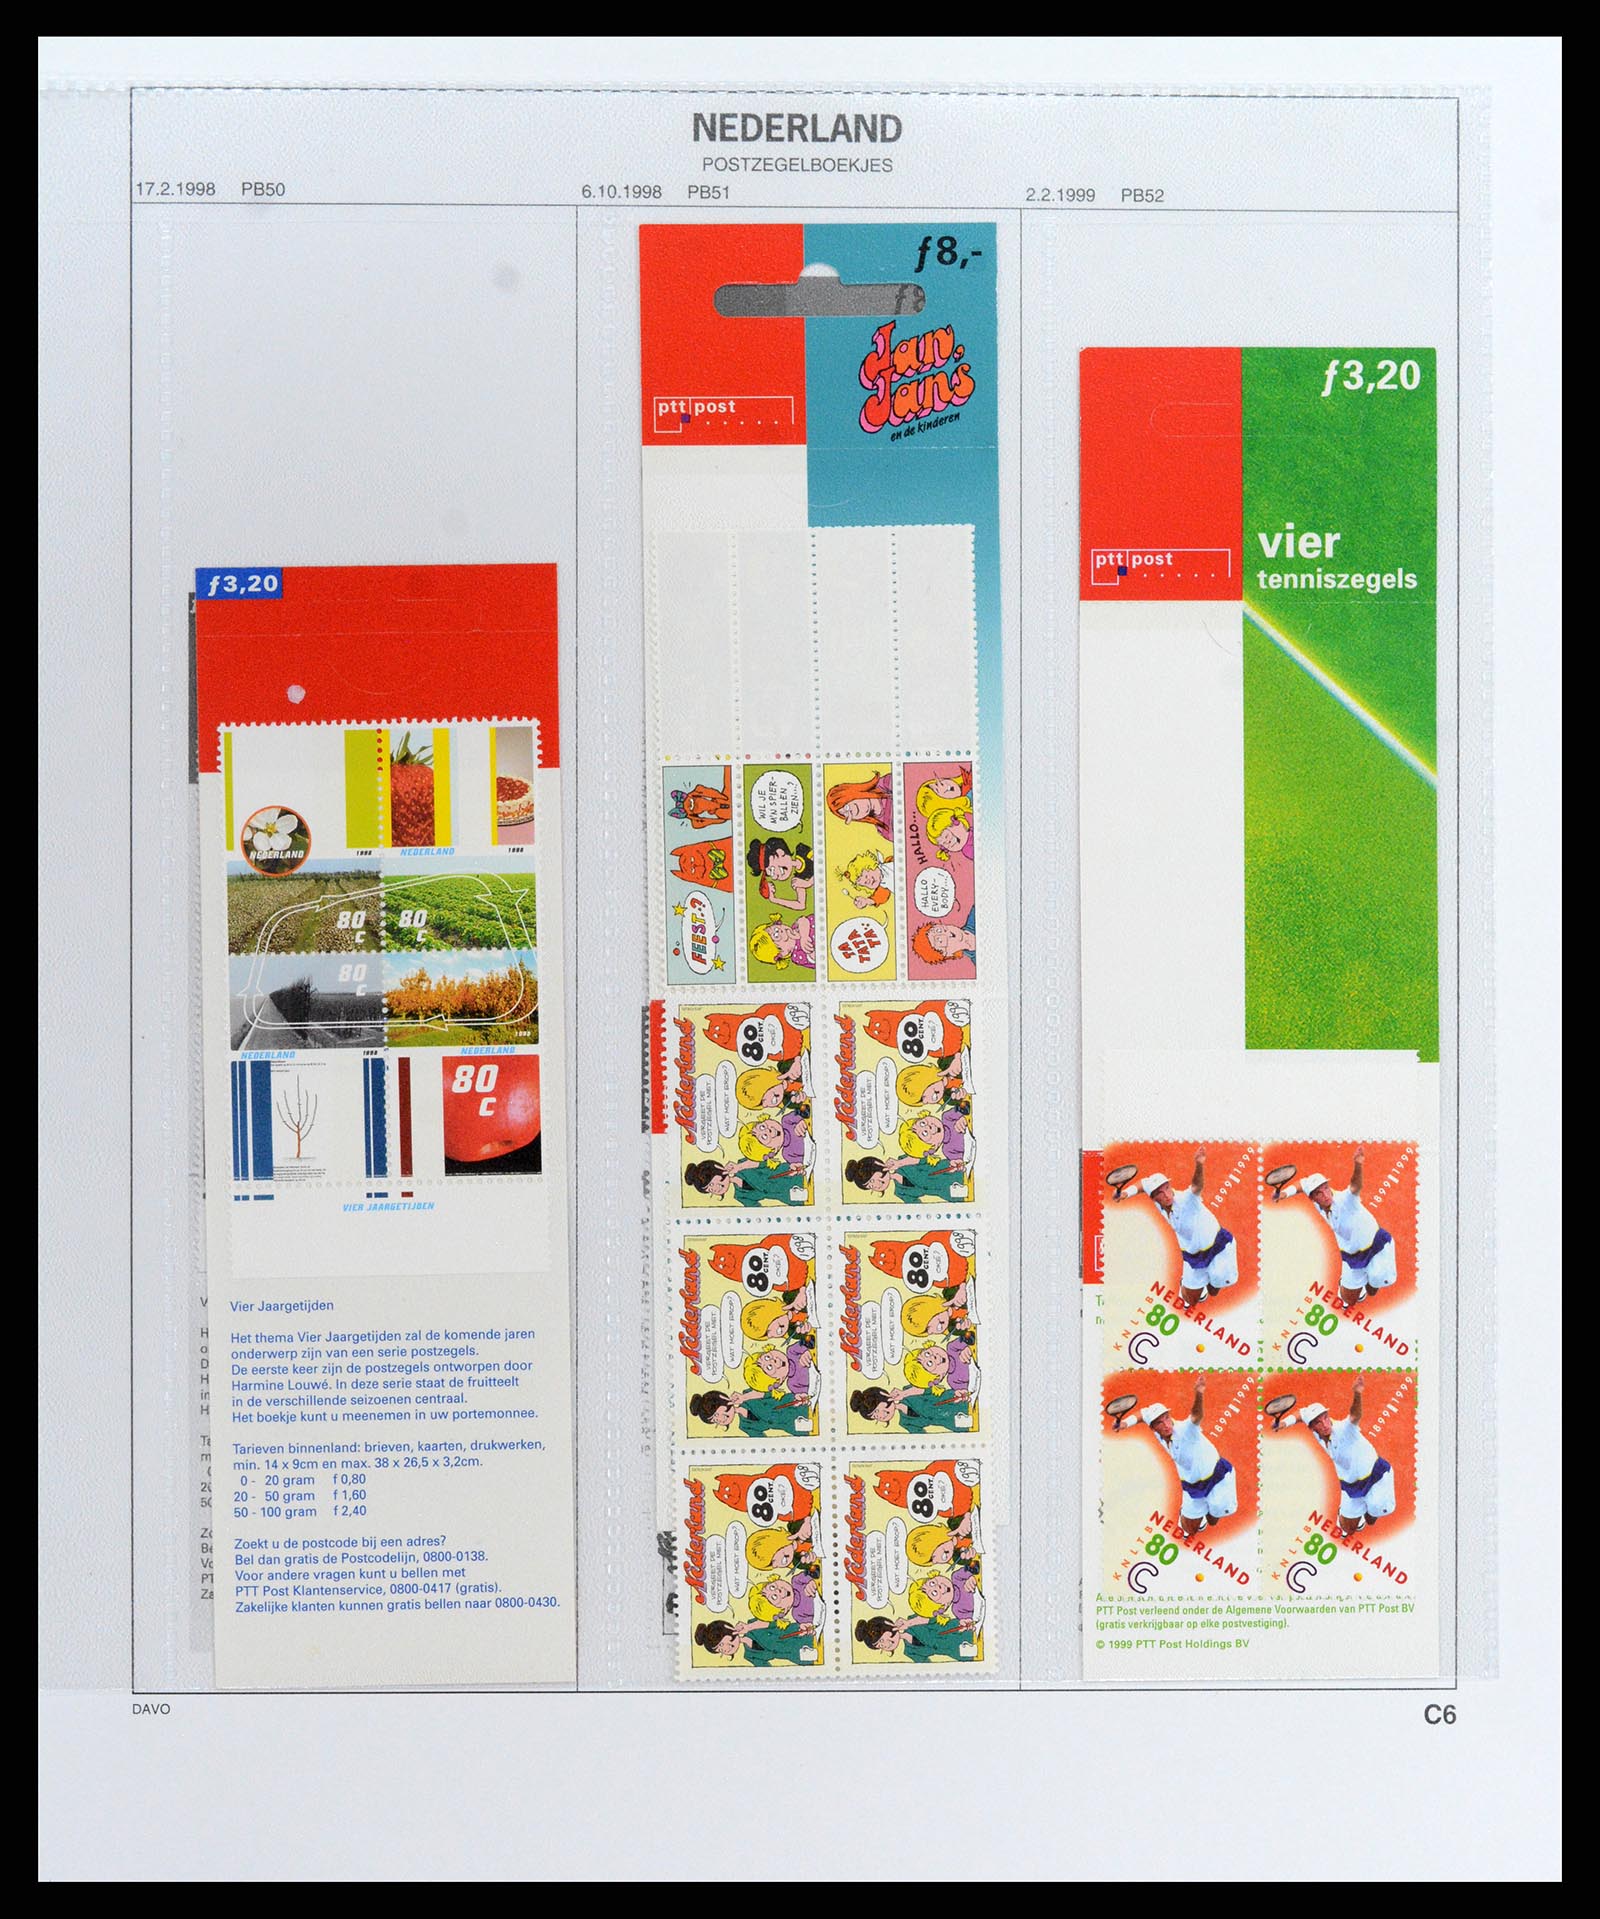 37871 035 - Stamp Collection 37871 Netherlands stampbooklets 1964-2000.